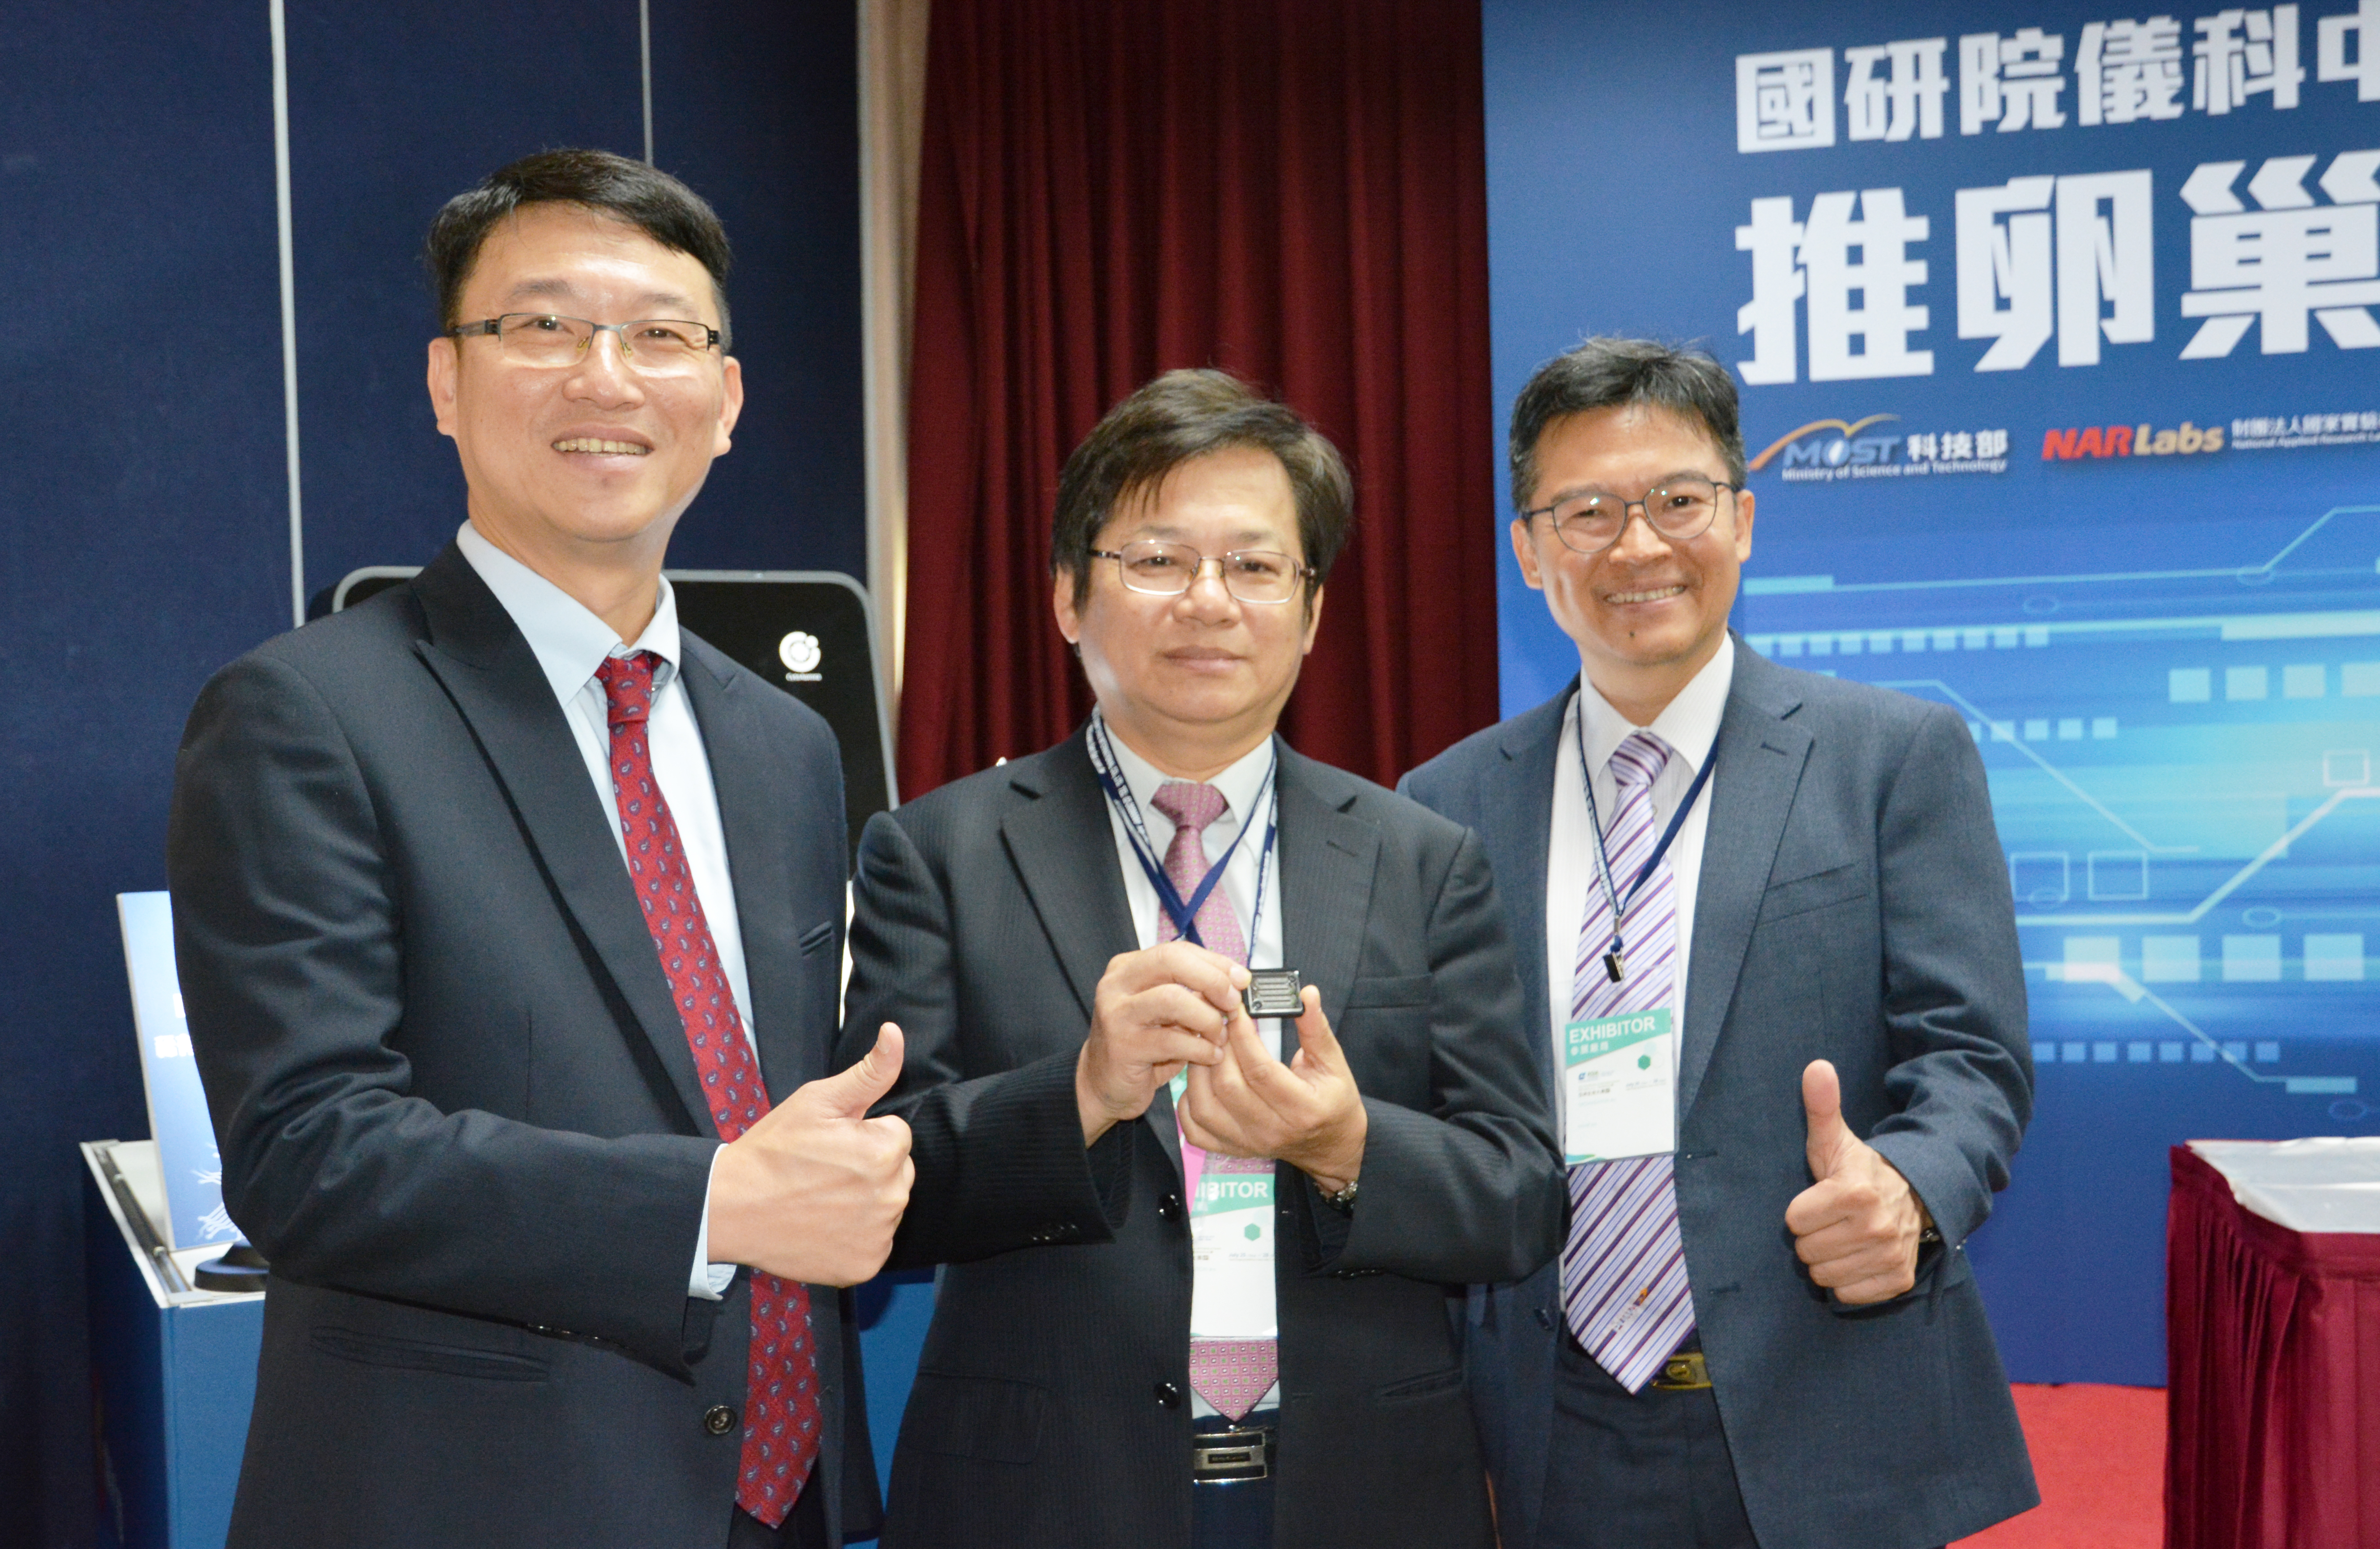 醫華生技董事長黃忠諤(左)感謝國研院院長王永和(中)和國研院儀科中心主任楊燿州對他們的協助與支持。